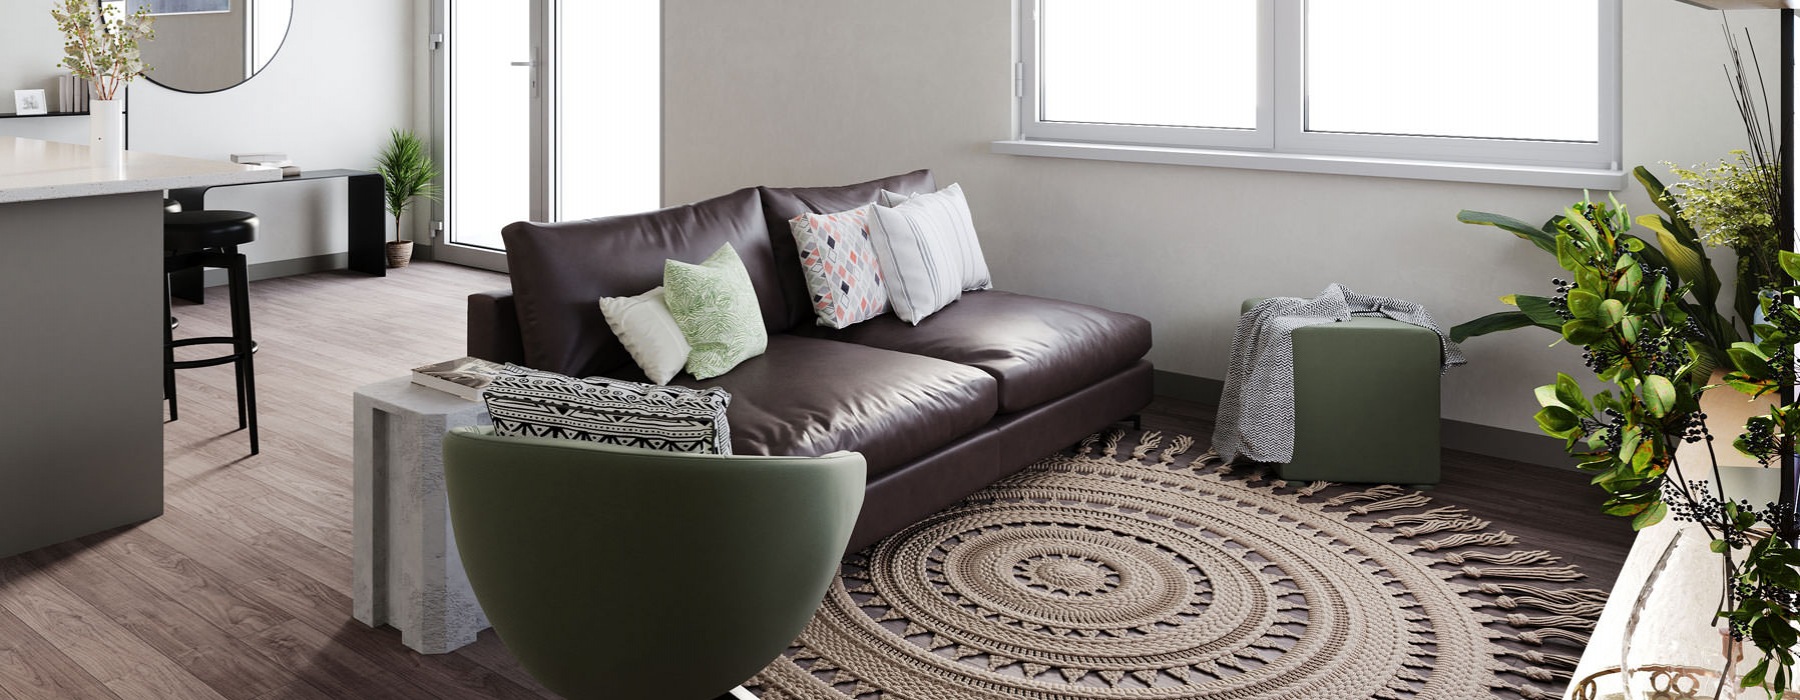 Living Room features open concept floorplan